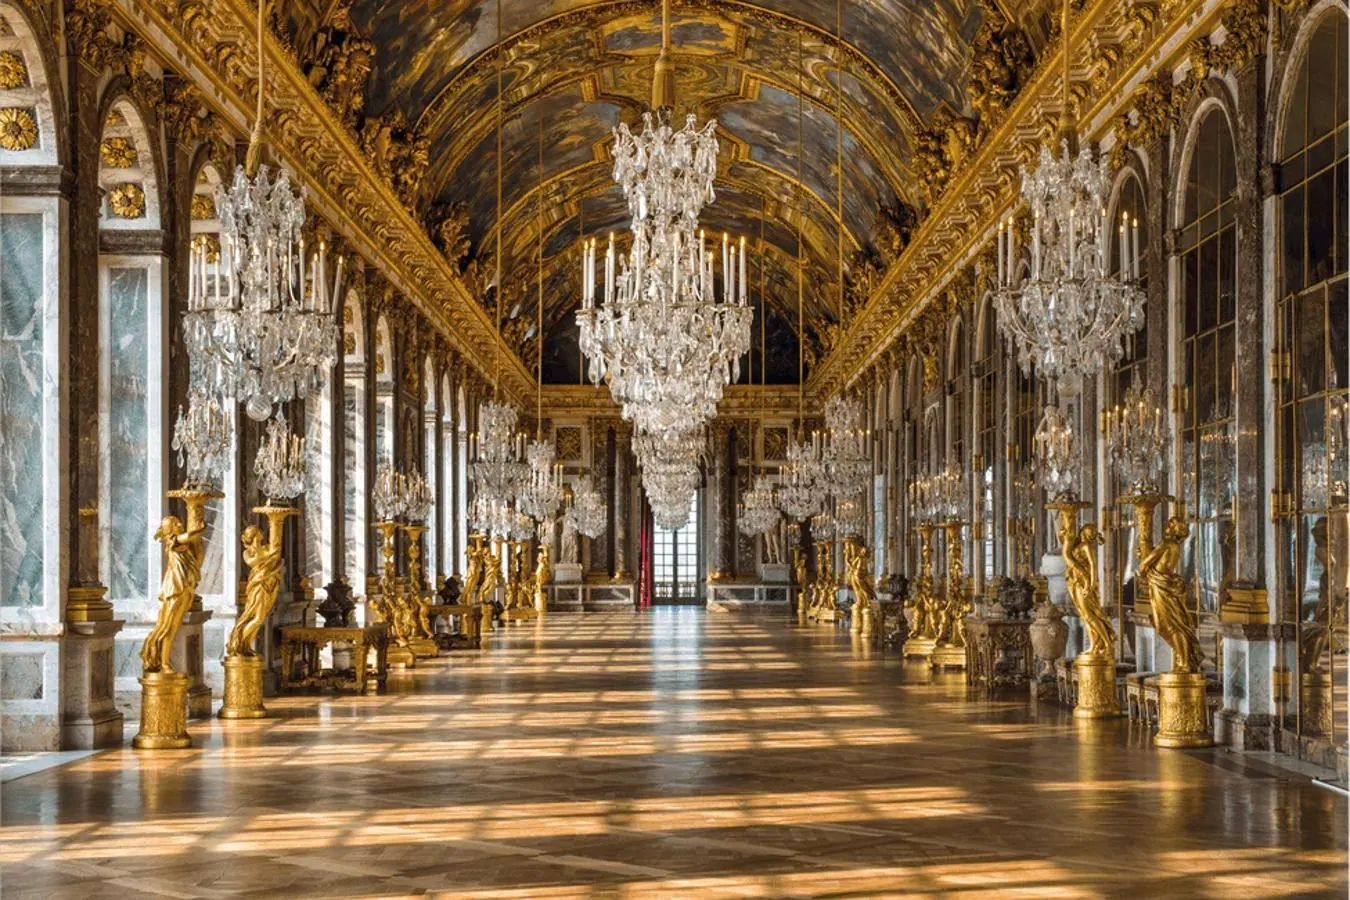 La experiencia de lujo más demandada se hace realidad: alojarse en el Palacio de Versalles como Maria Antonieta y Luis XVI